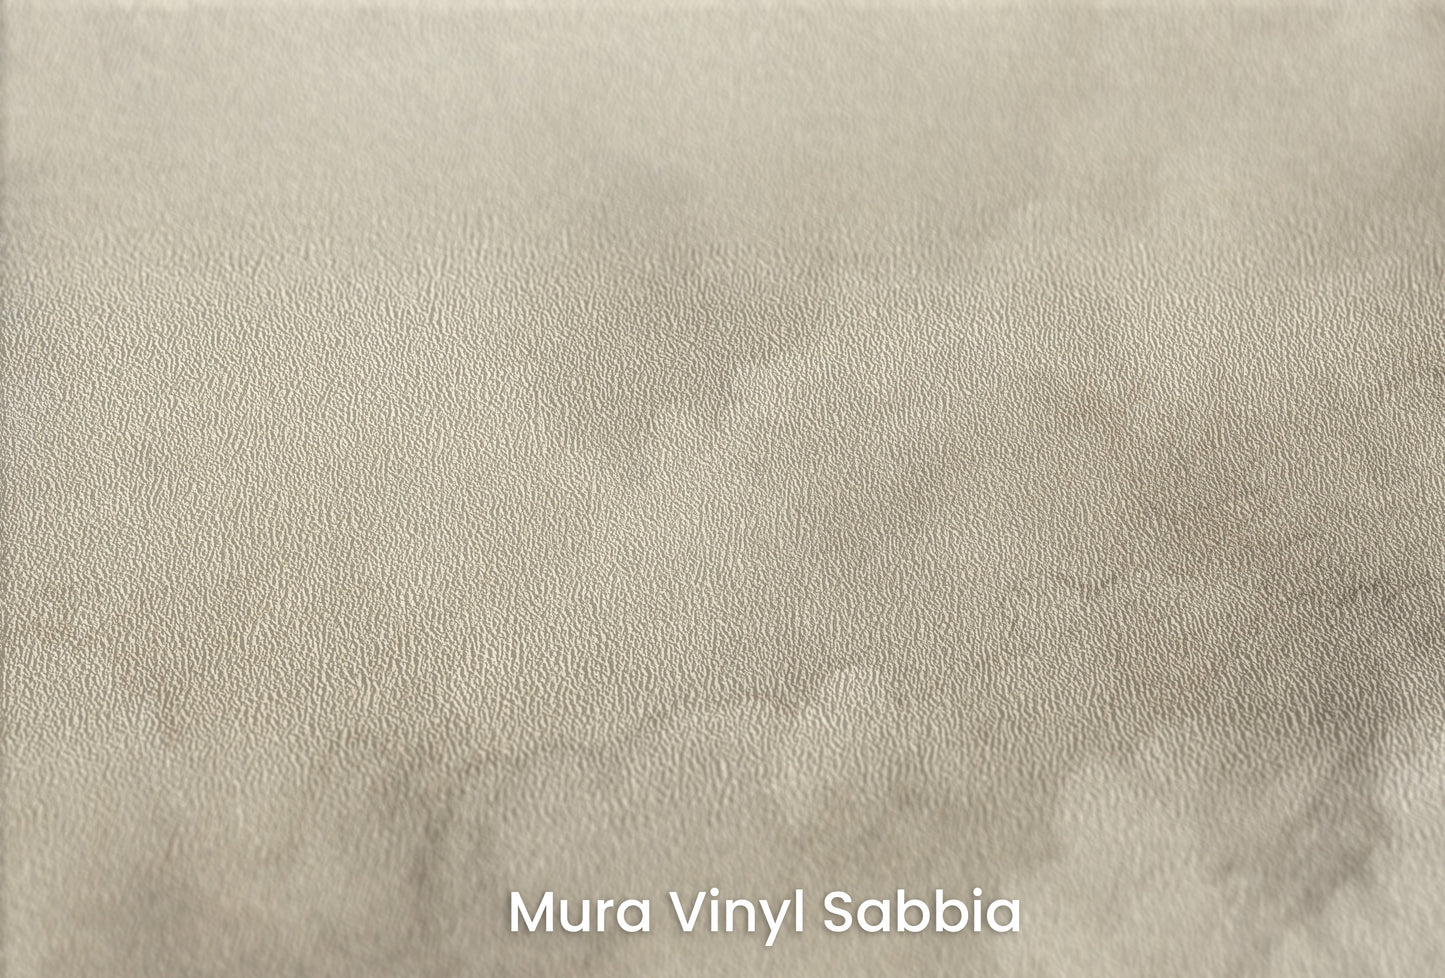 Zbliżenie na artystyczną fototapetę o nazwie HEAVENLY ASPIRE MURAL na podłożu Mura Vinyl Sabbia struktura grubego ziarna piasku.